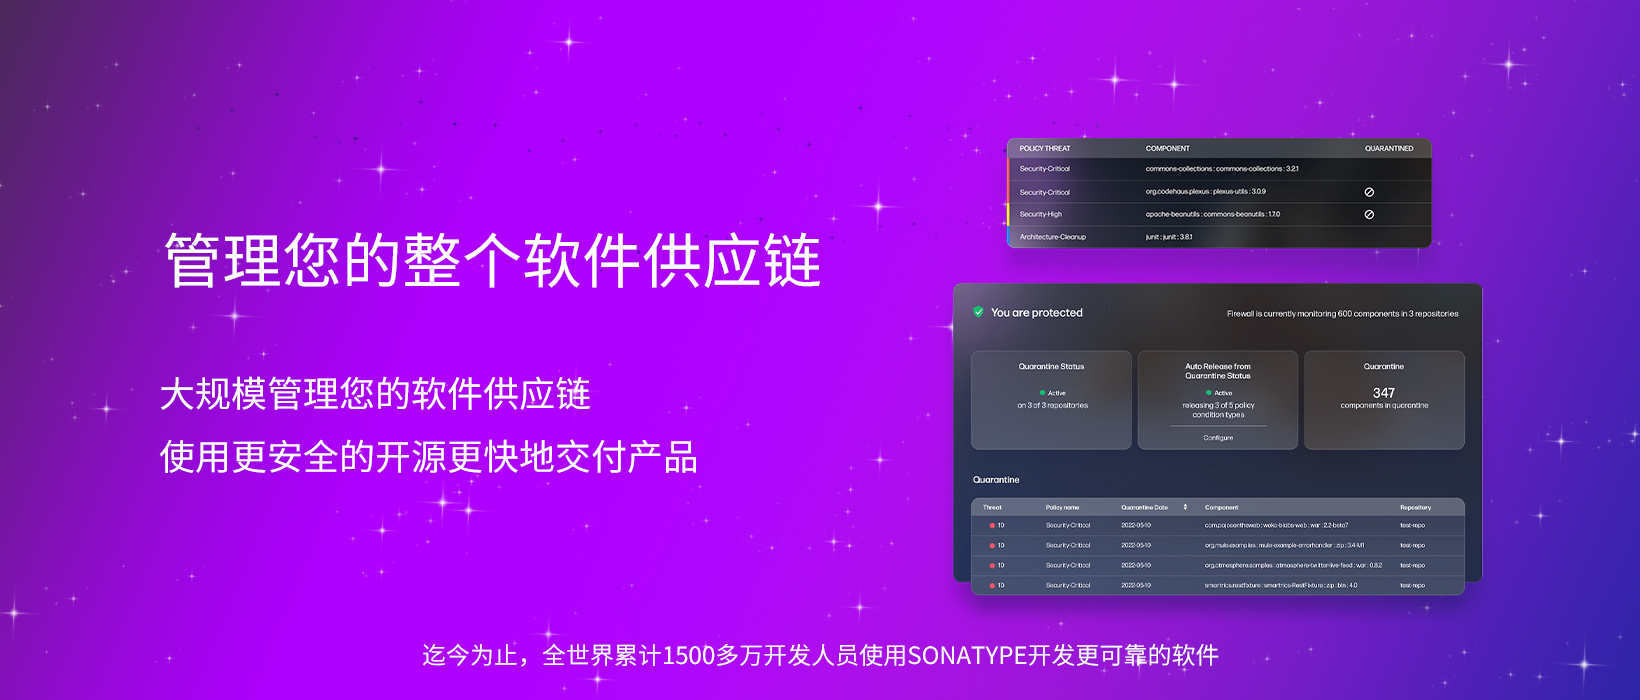 【管理您的整个软件供应链】上海道宁与​Sonatype助力您以更安全的开源更快地交付产品